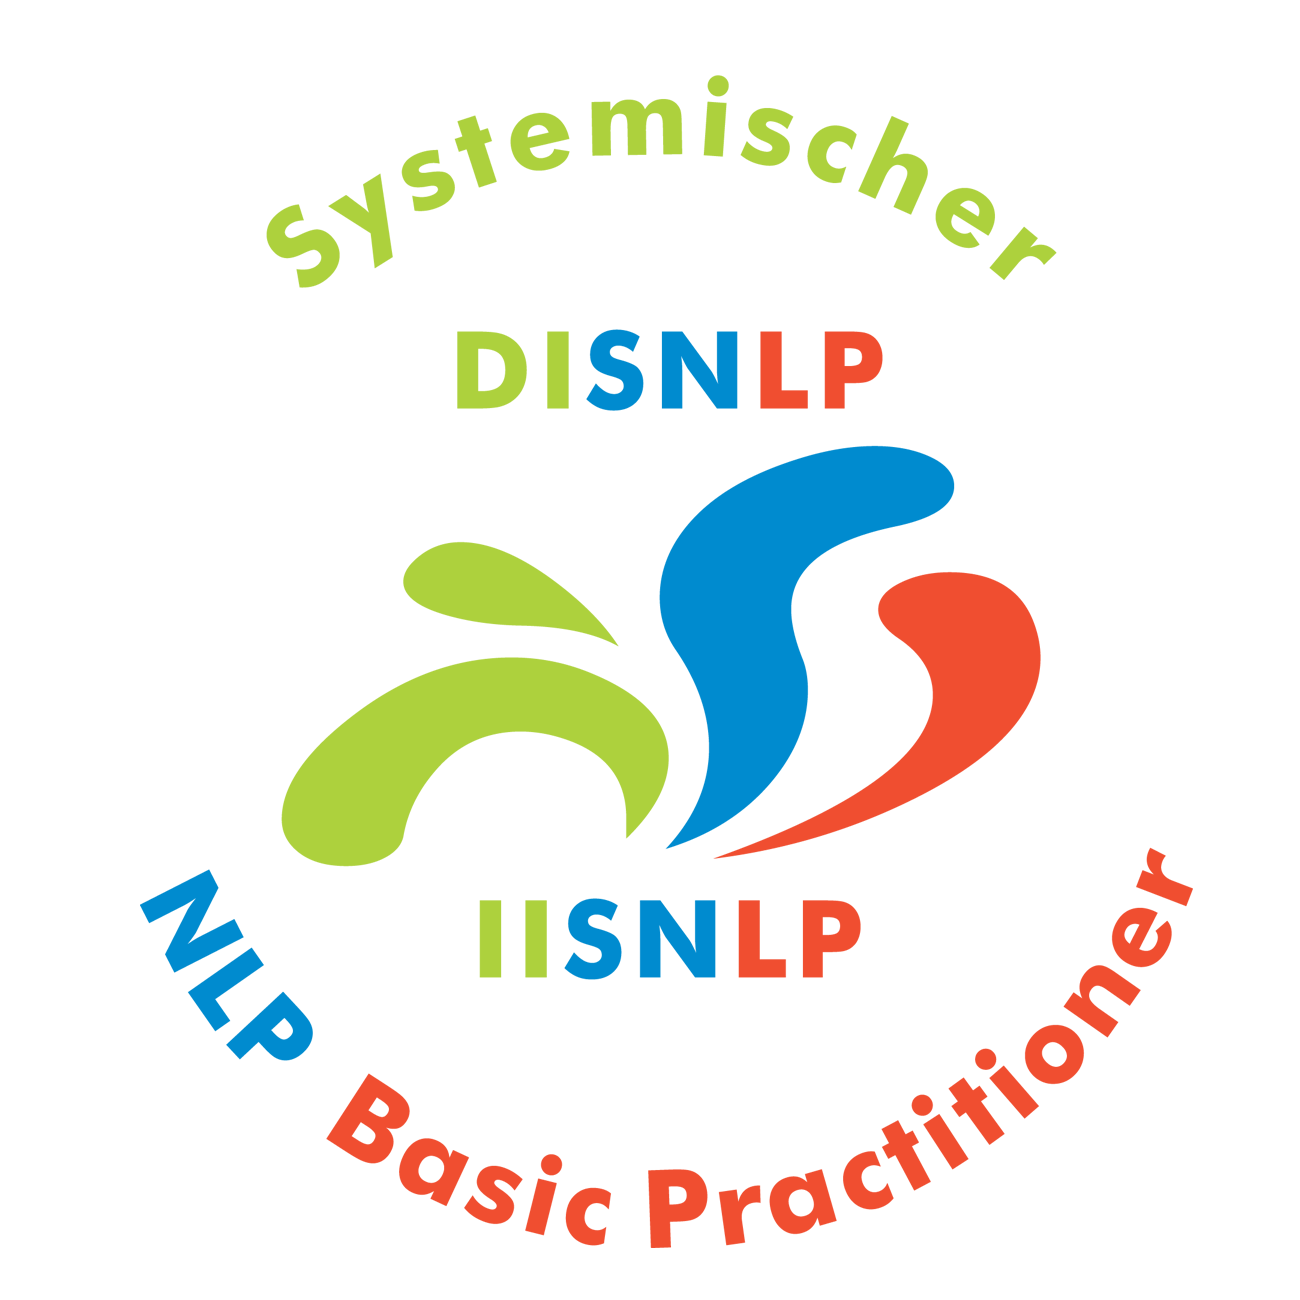 Seminar Selbstbewusstsein, Selbstvertrauen, Selbstwert, Selbstsicherheit stärken Freiburg mit NLP Coaching Kurs für mehr Selbstbewusstsein